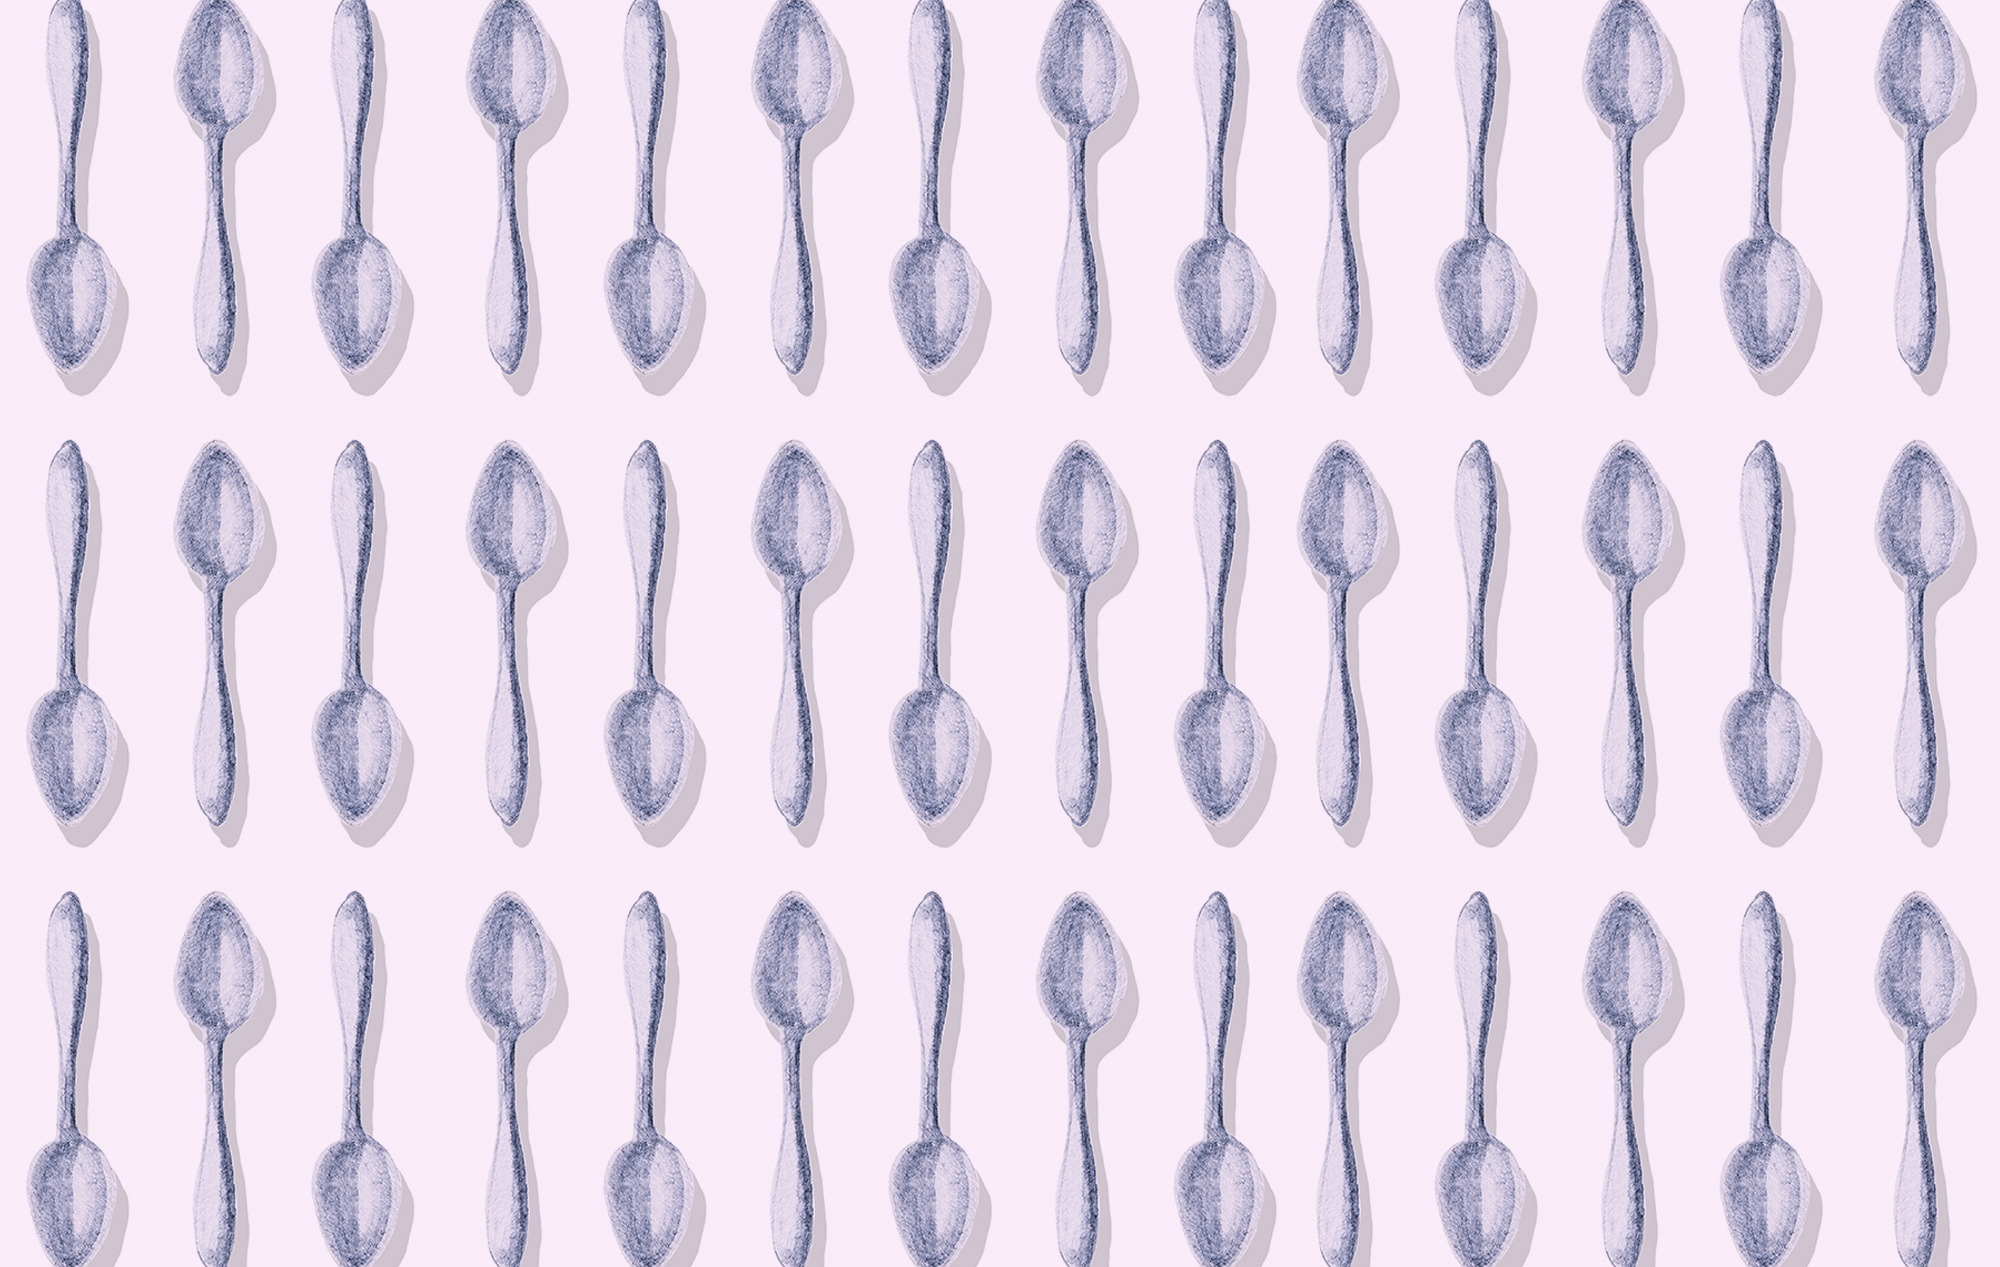 Spoon pattern on a light purple background.